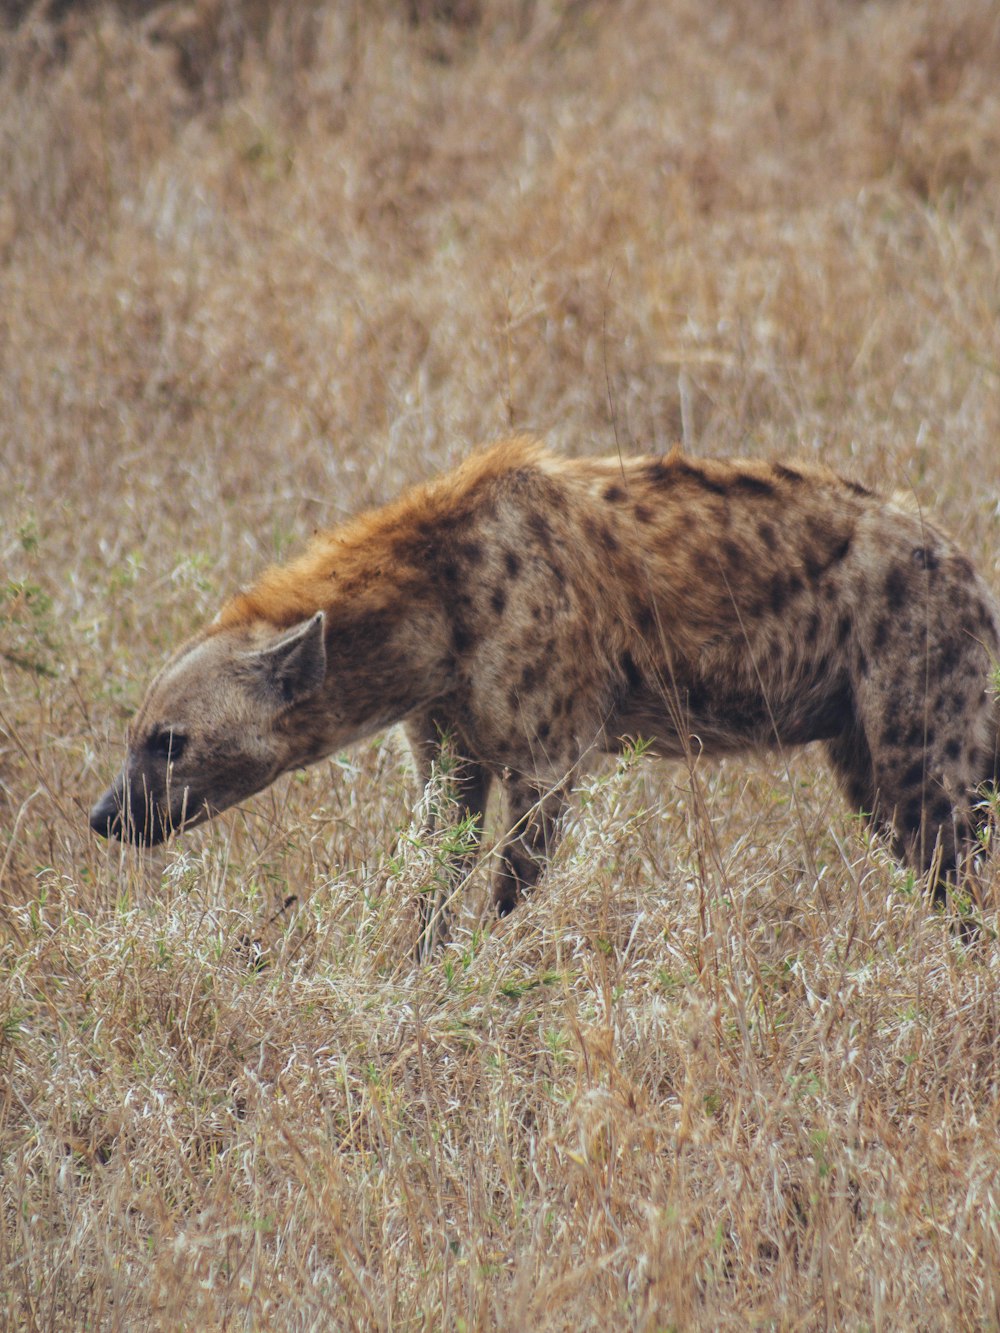 a hyena in a field